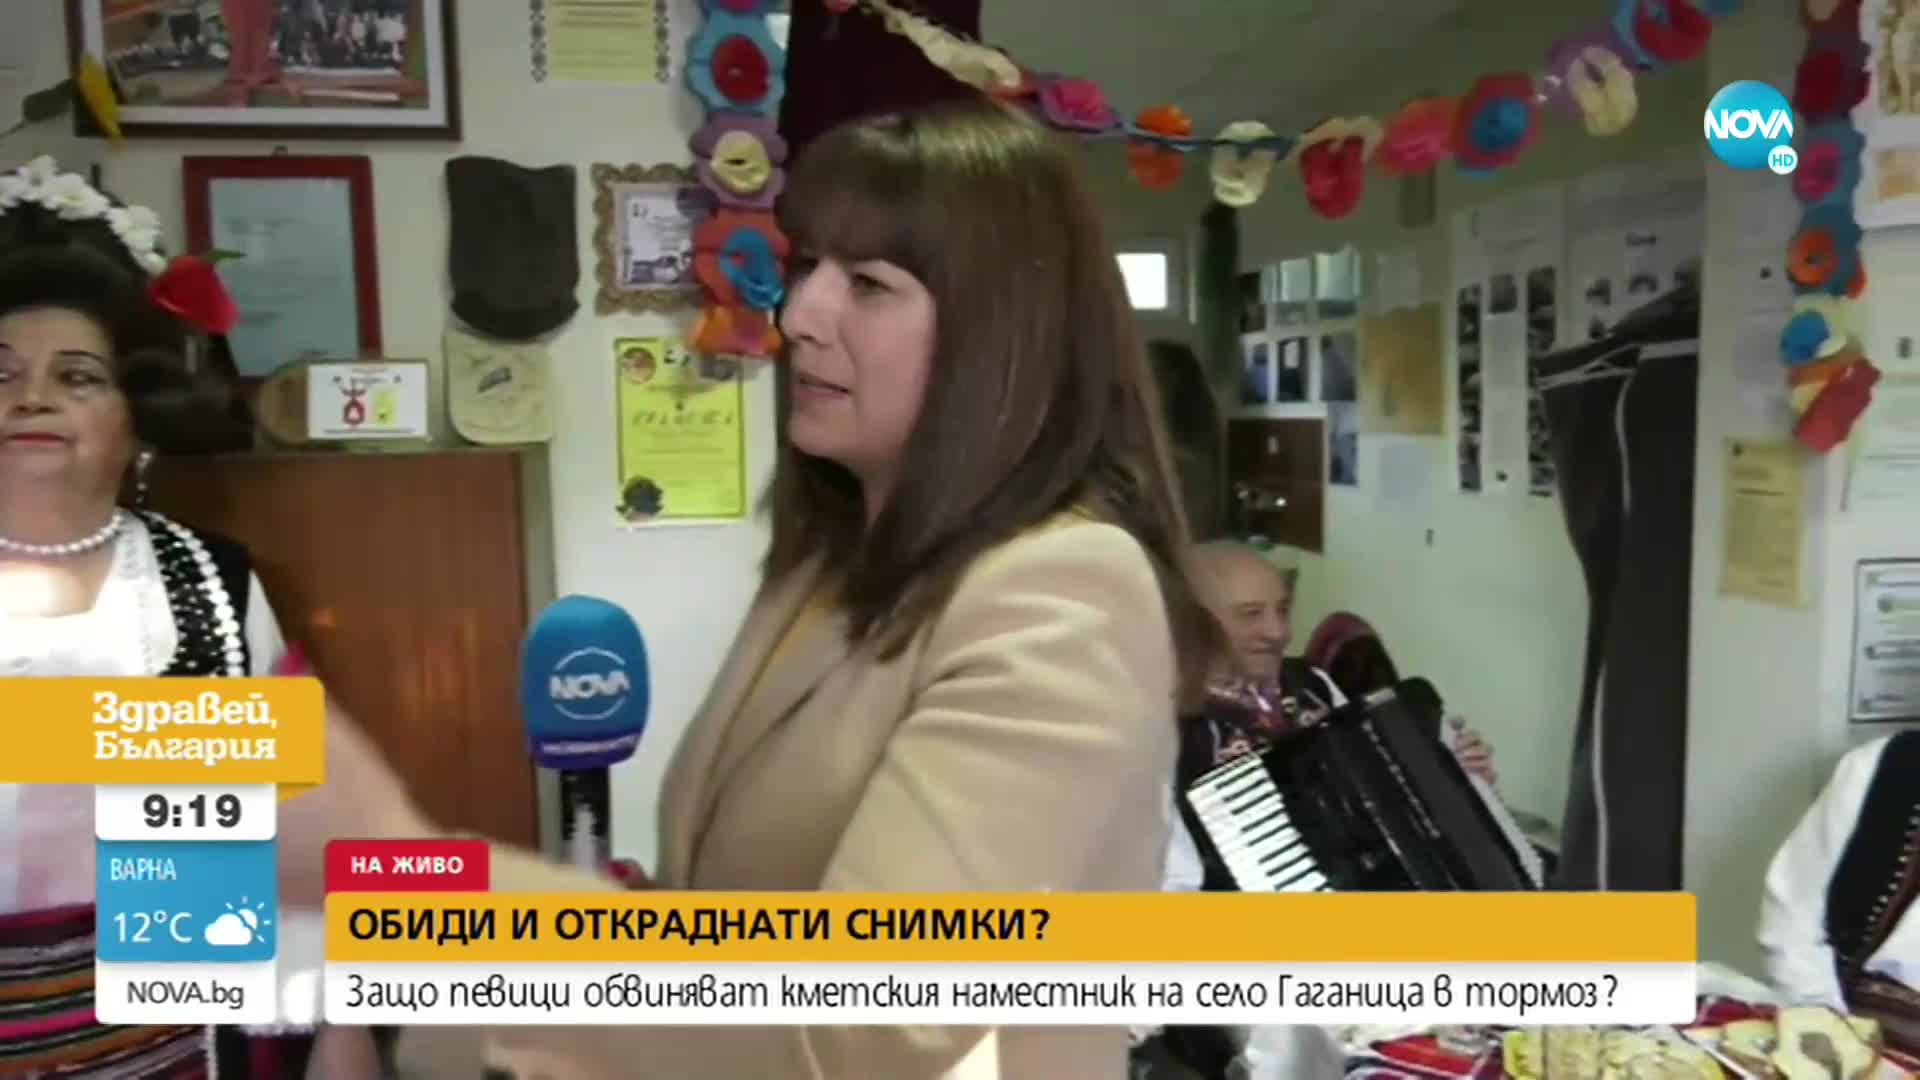 Певици от село Гаганица обвиняват кметския наместник в тормоз